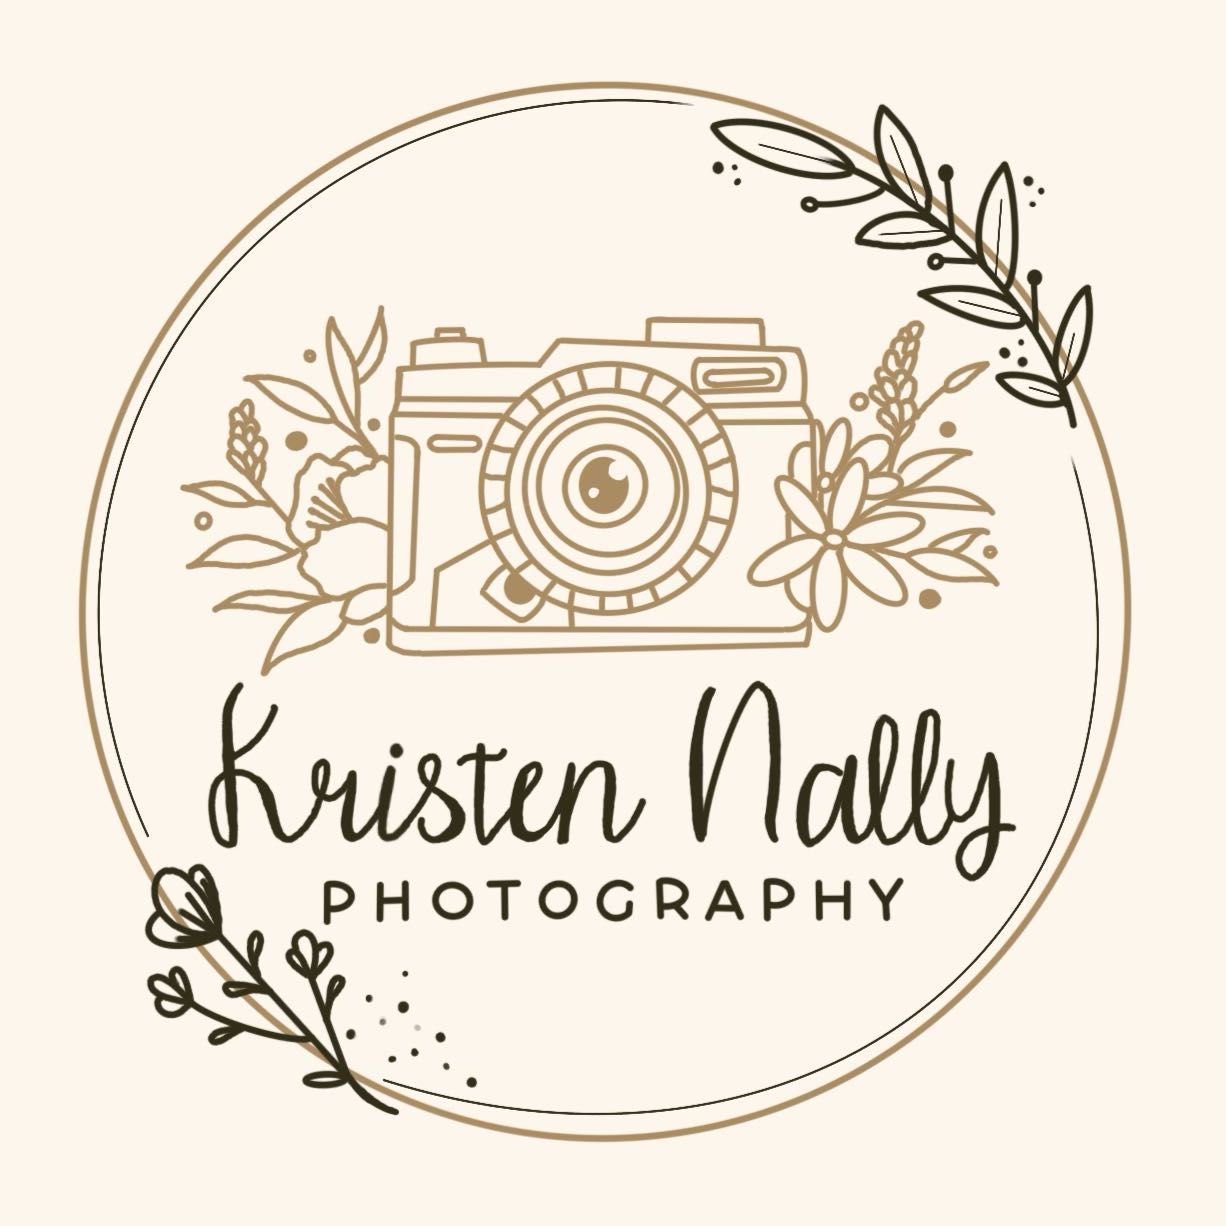 Kristen Nally Photography, Raymond, 03077